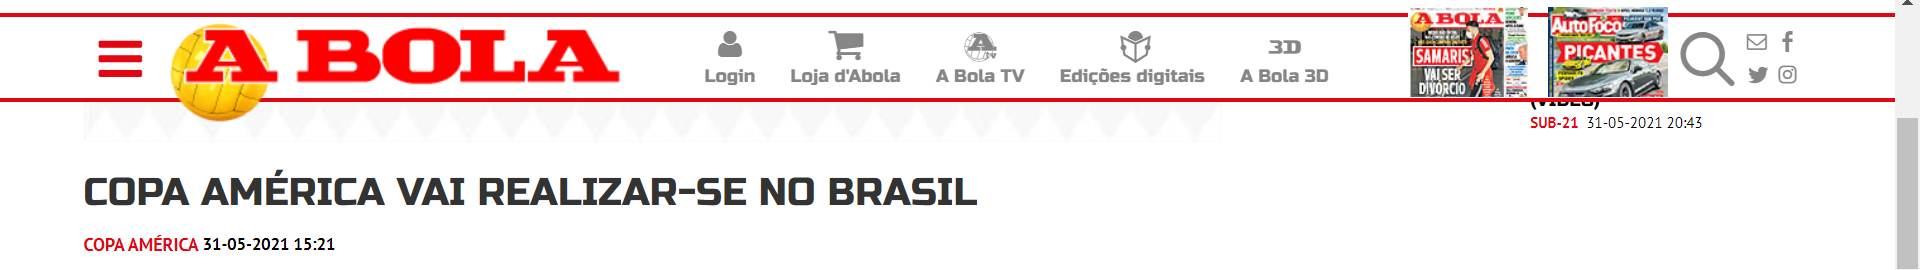 Em Portugal, o 'A Bola' também noticiou a mudança de sede da Argentina para o Brasil.